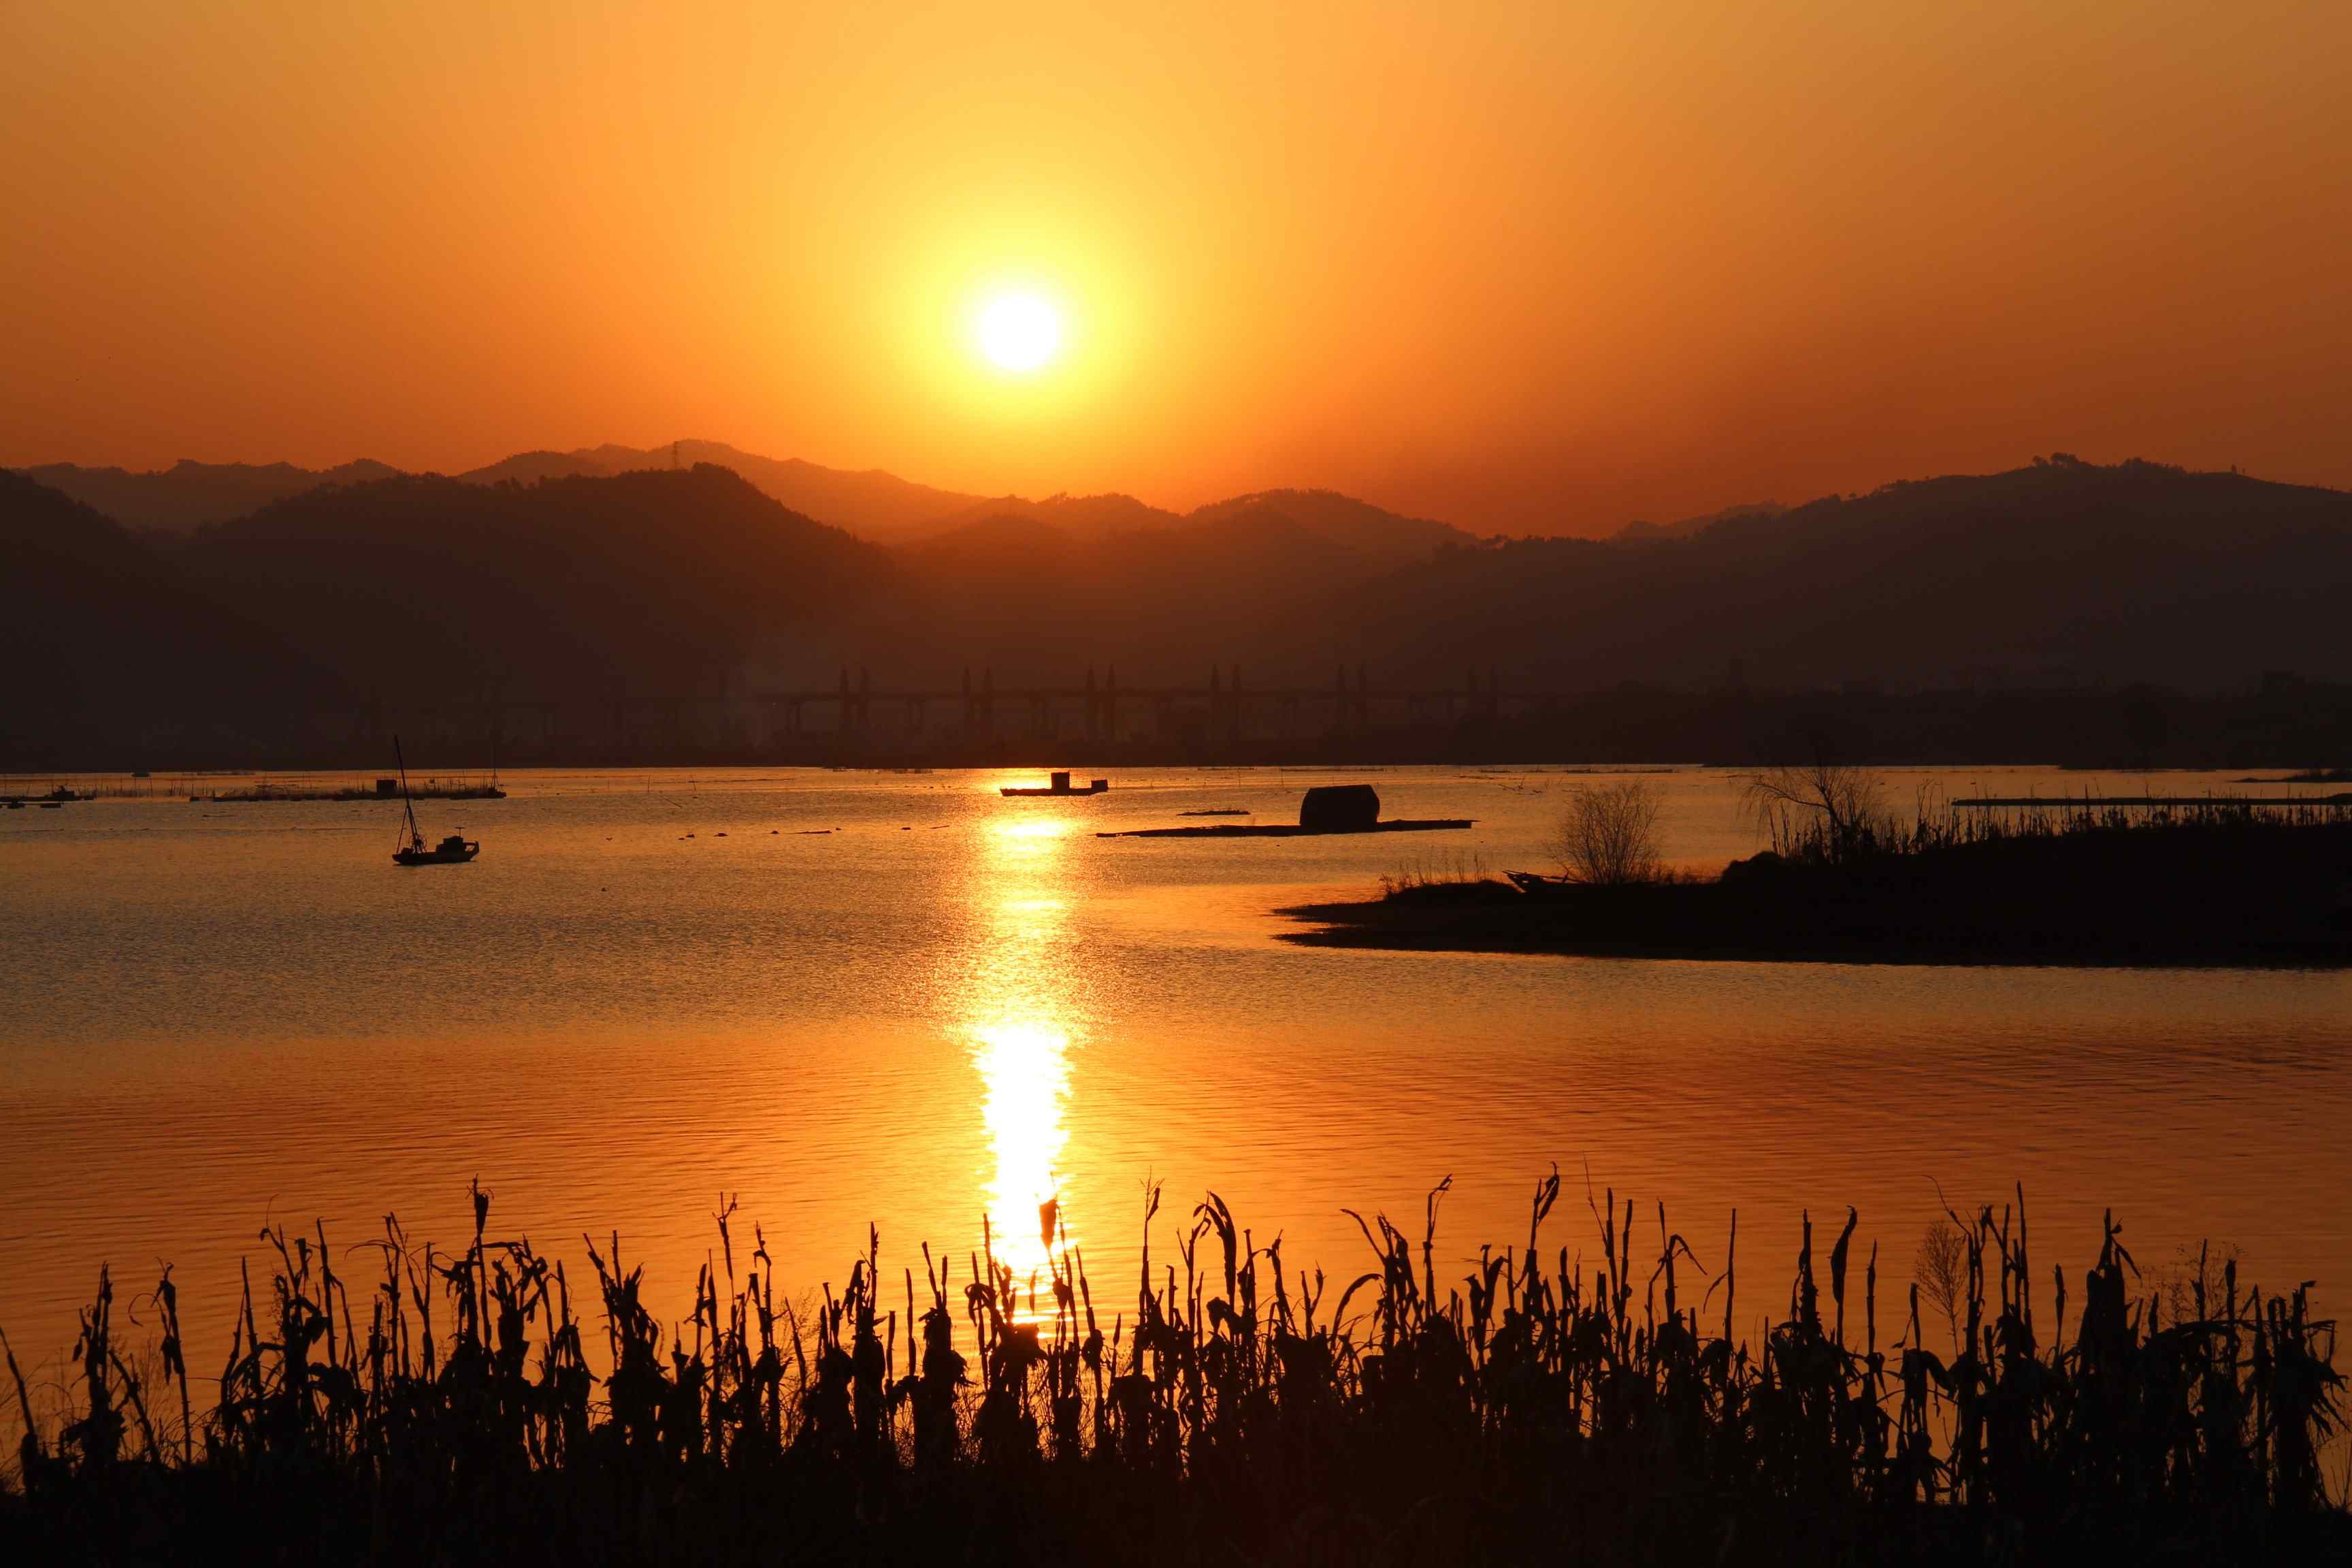 唯美夕阳下的汉江风景图片壁纸